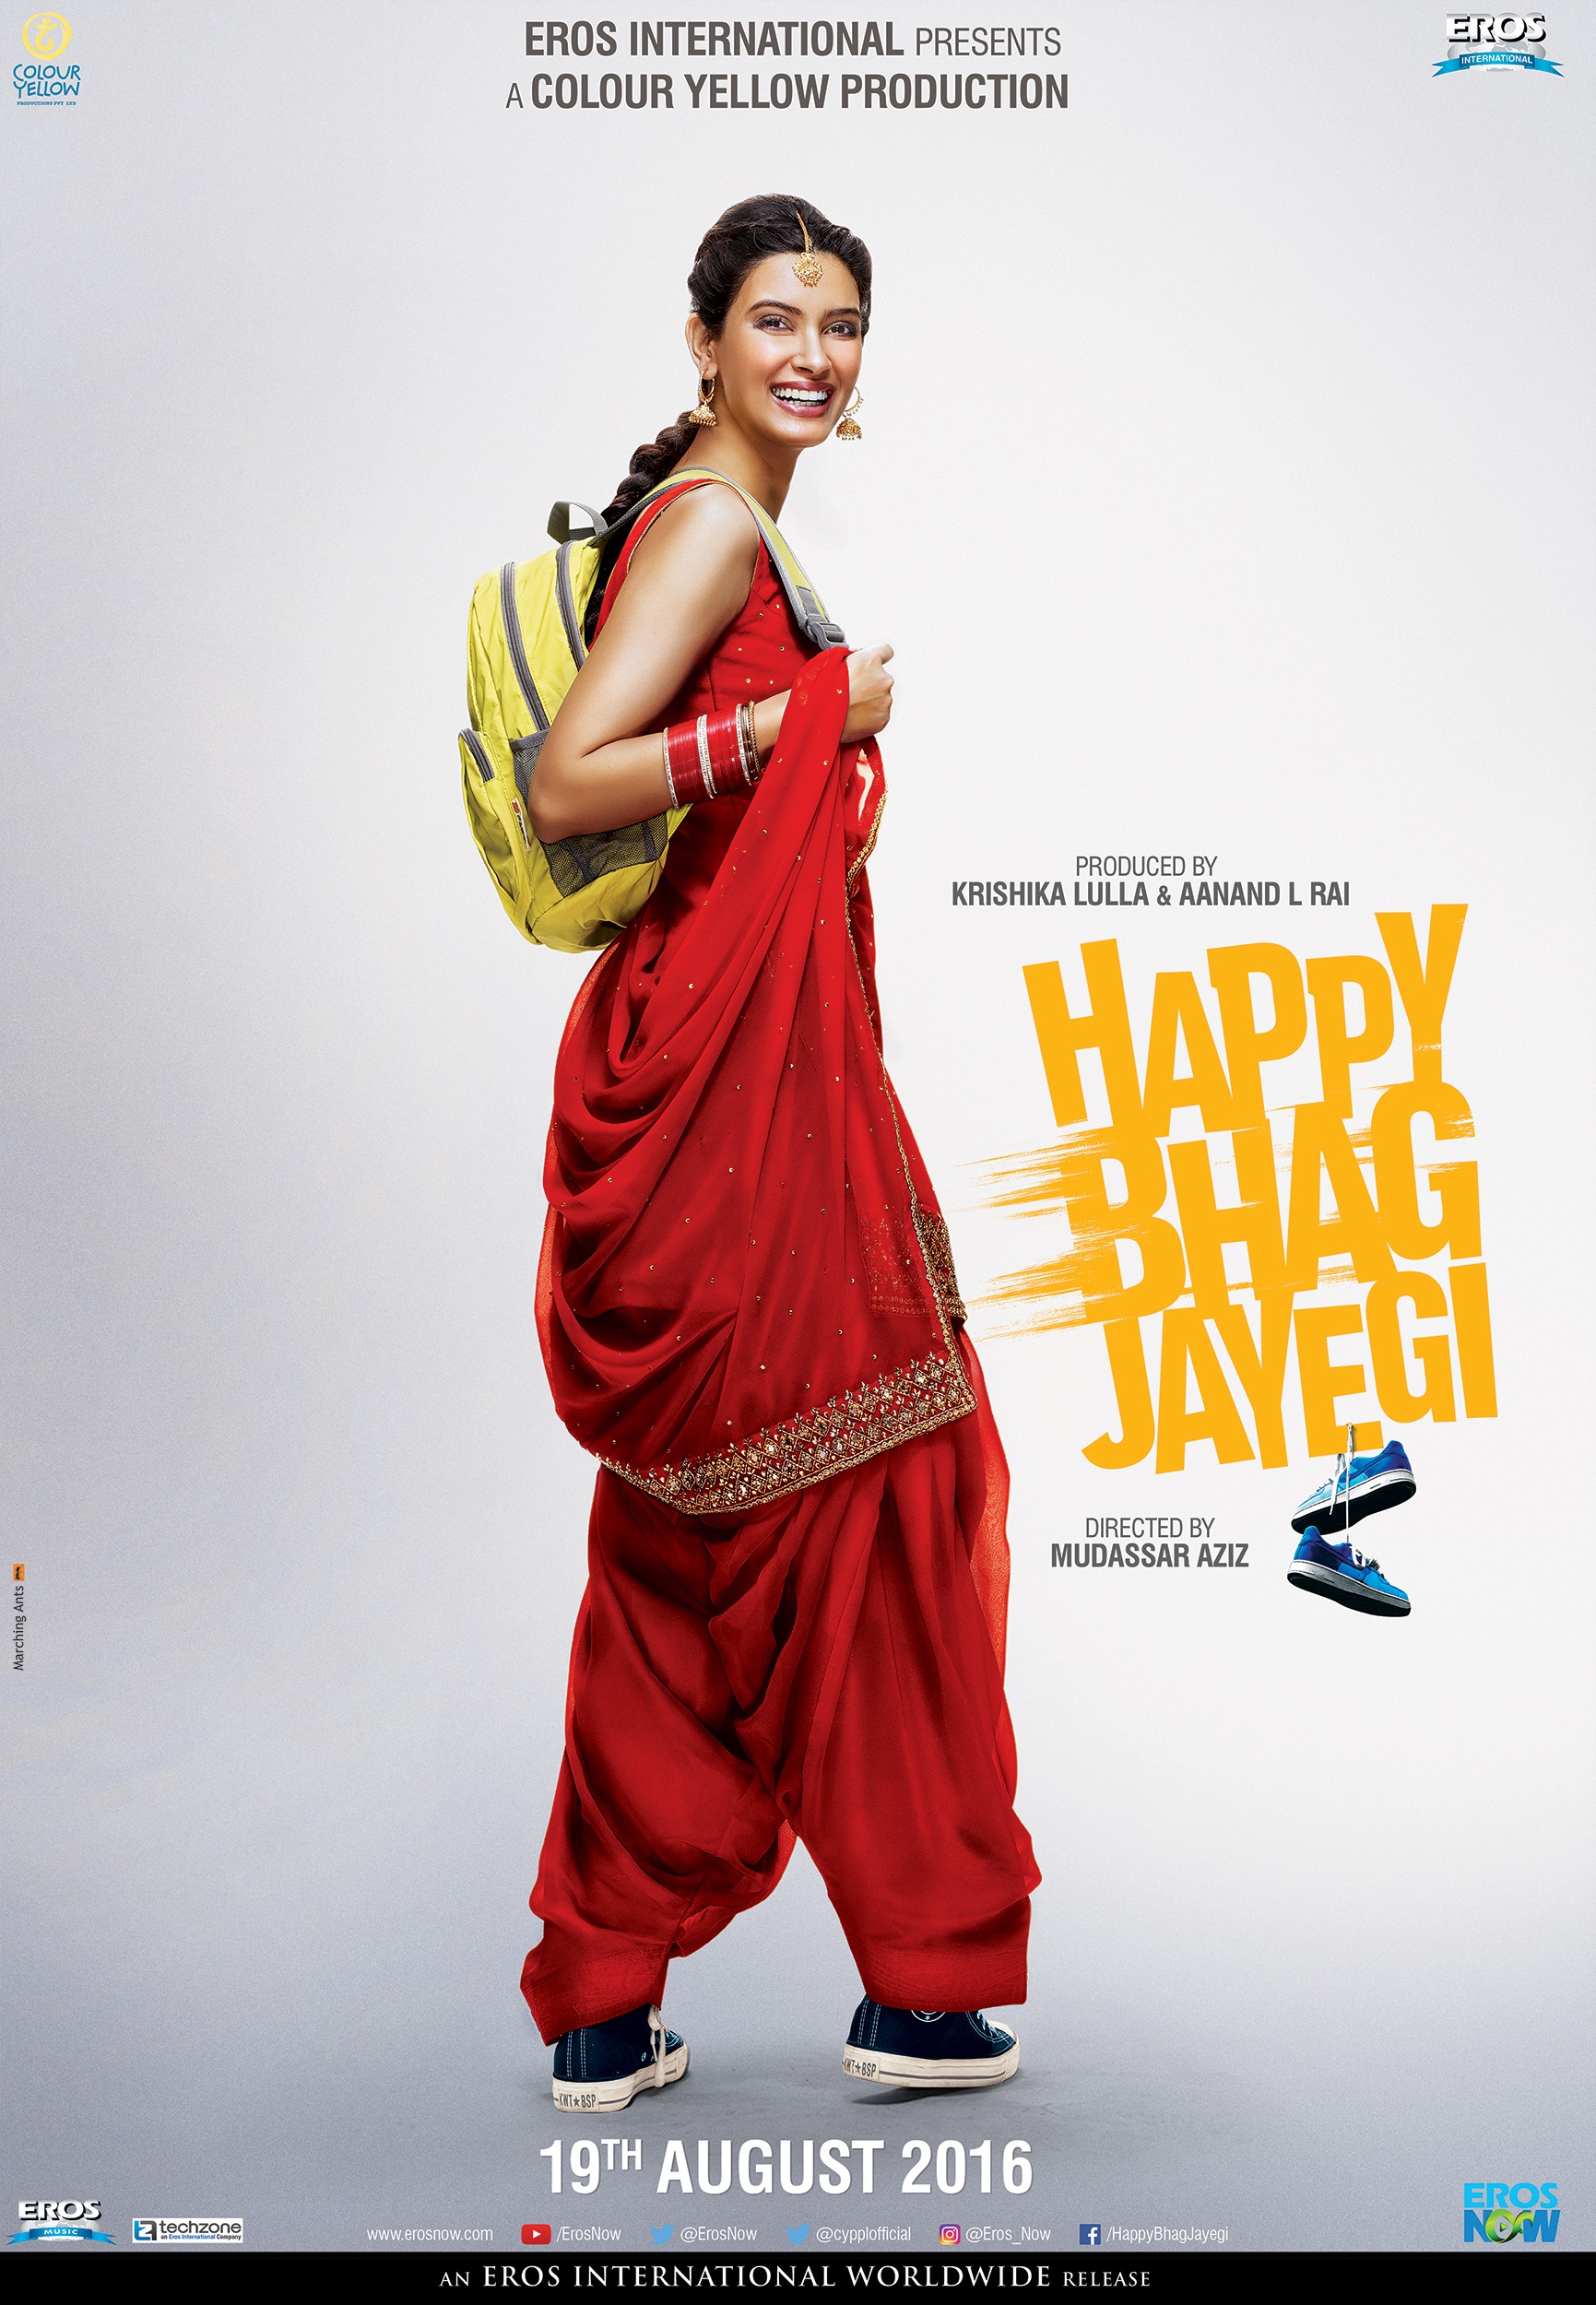 Mega Sized Movie Poster Image for Happy Bhag Jayegi (#4 of 9)